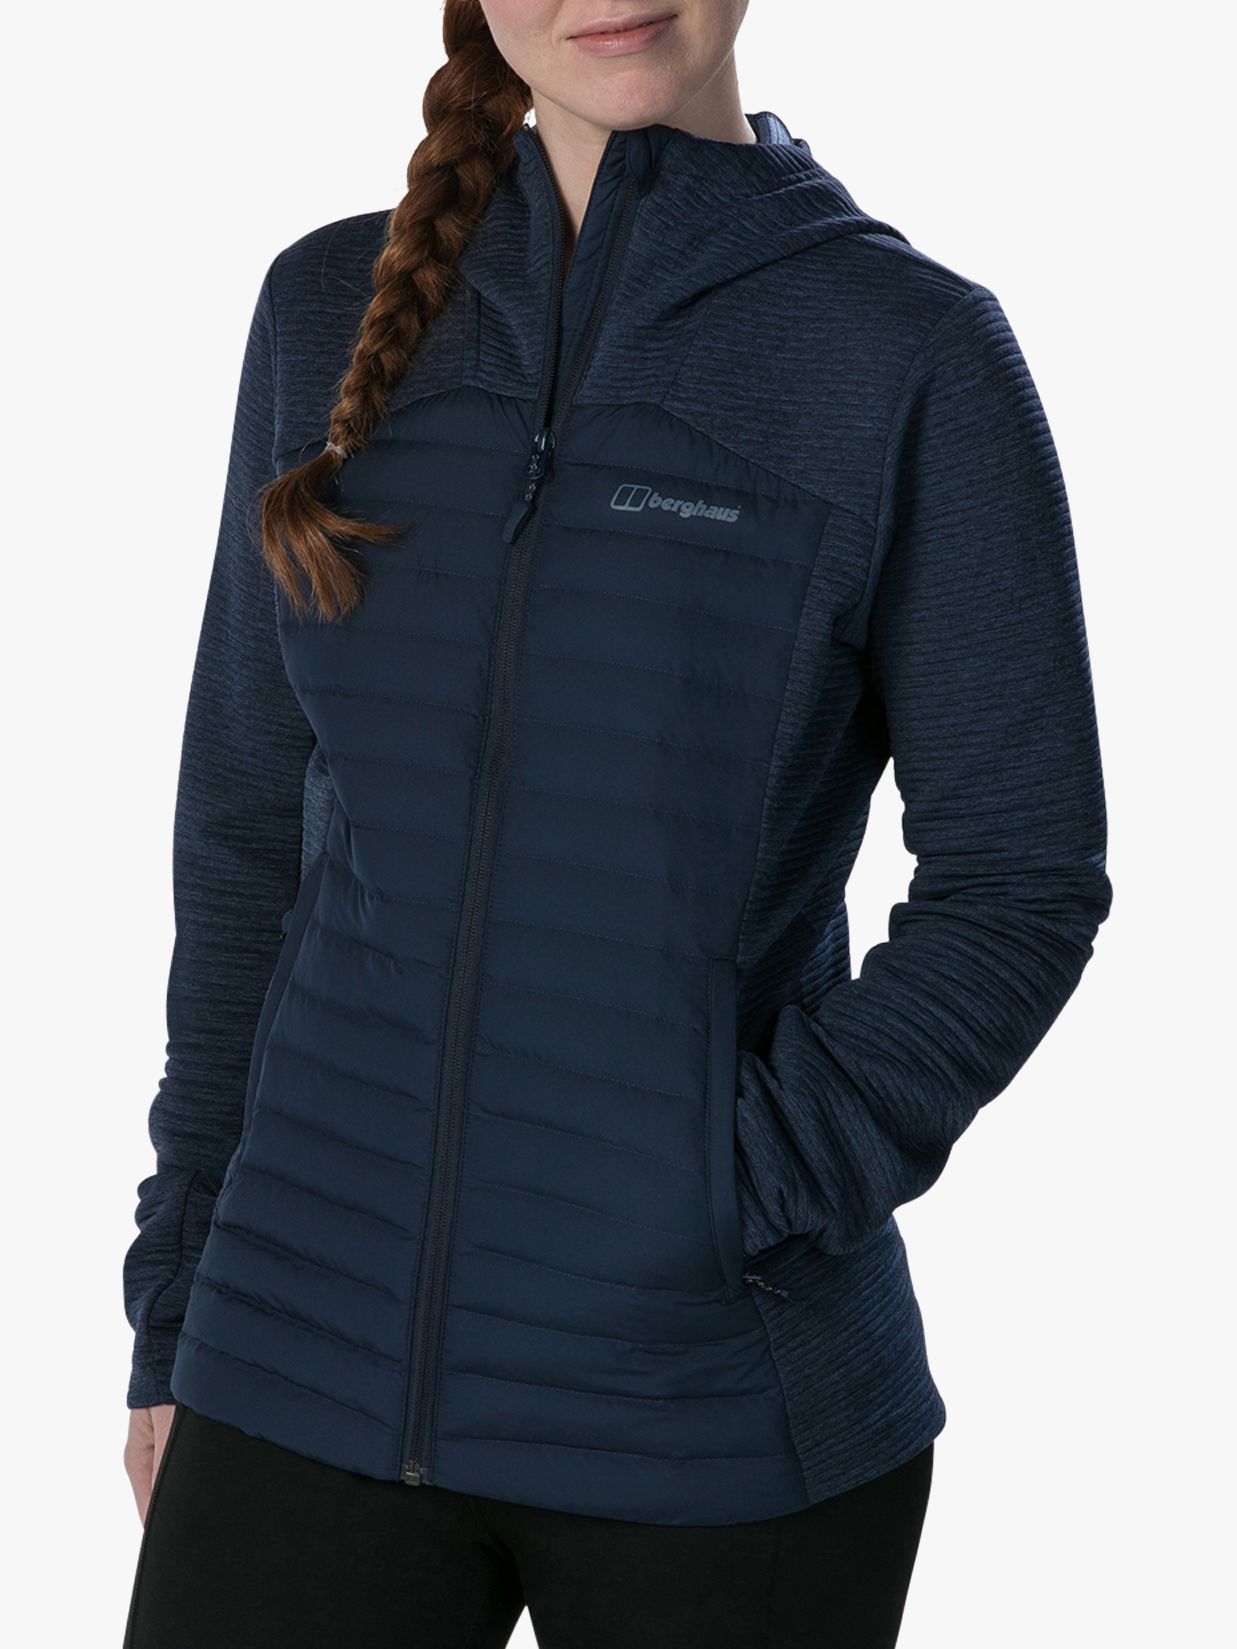 Berghaus Nula Hybrid Women's Water Resistant Jacket, Dusk, 8